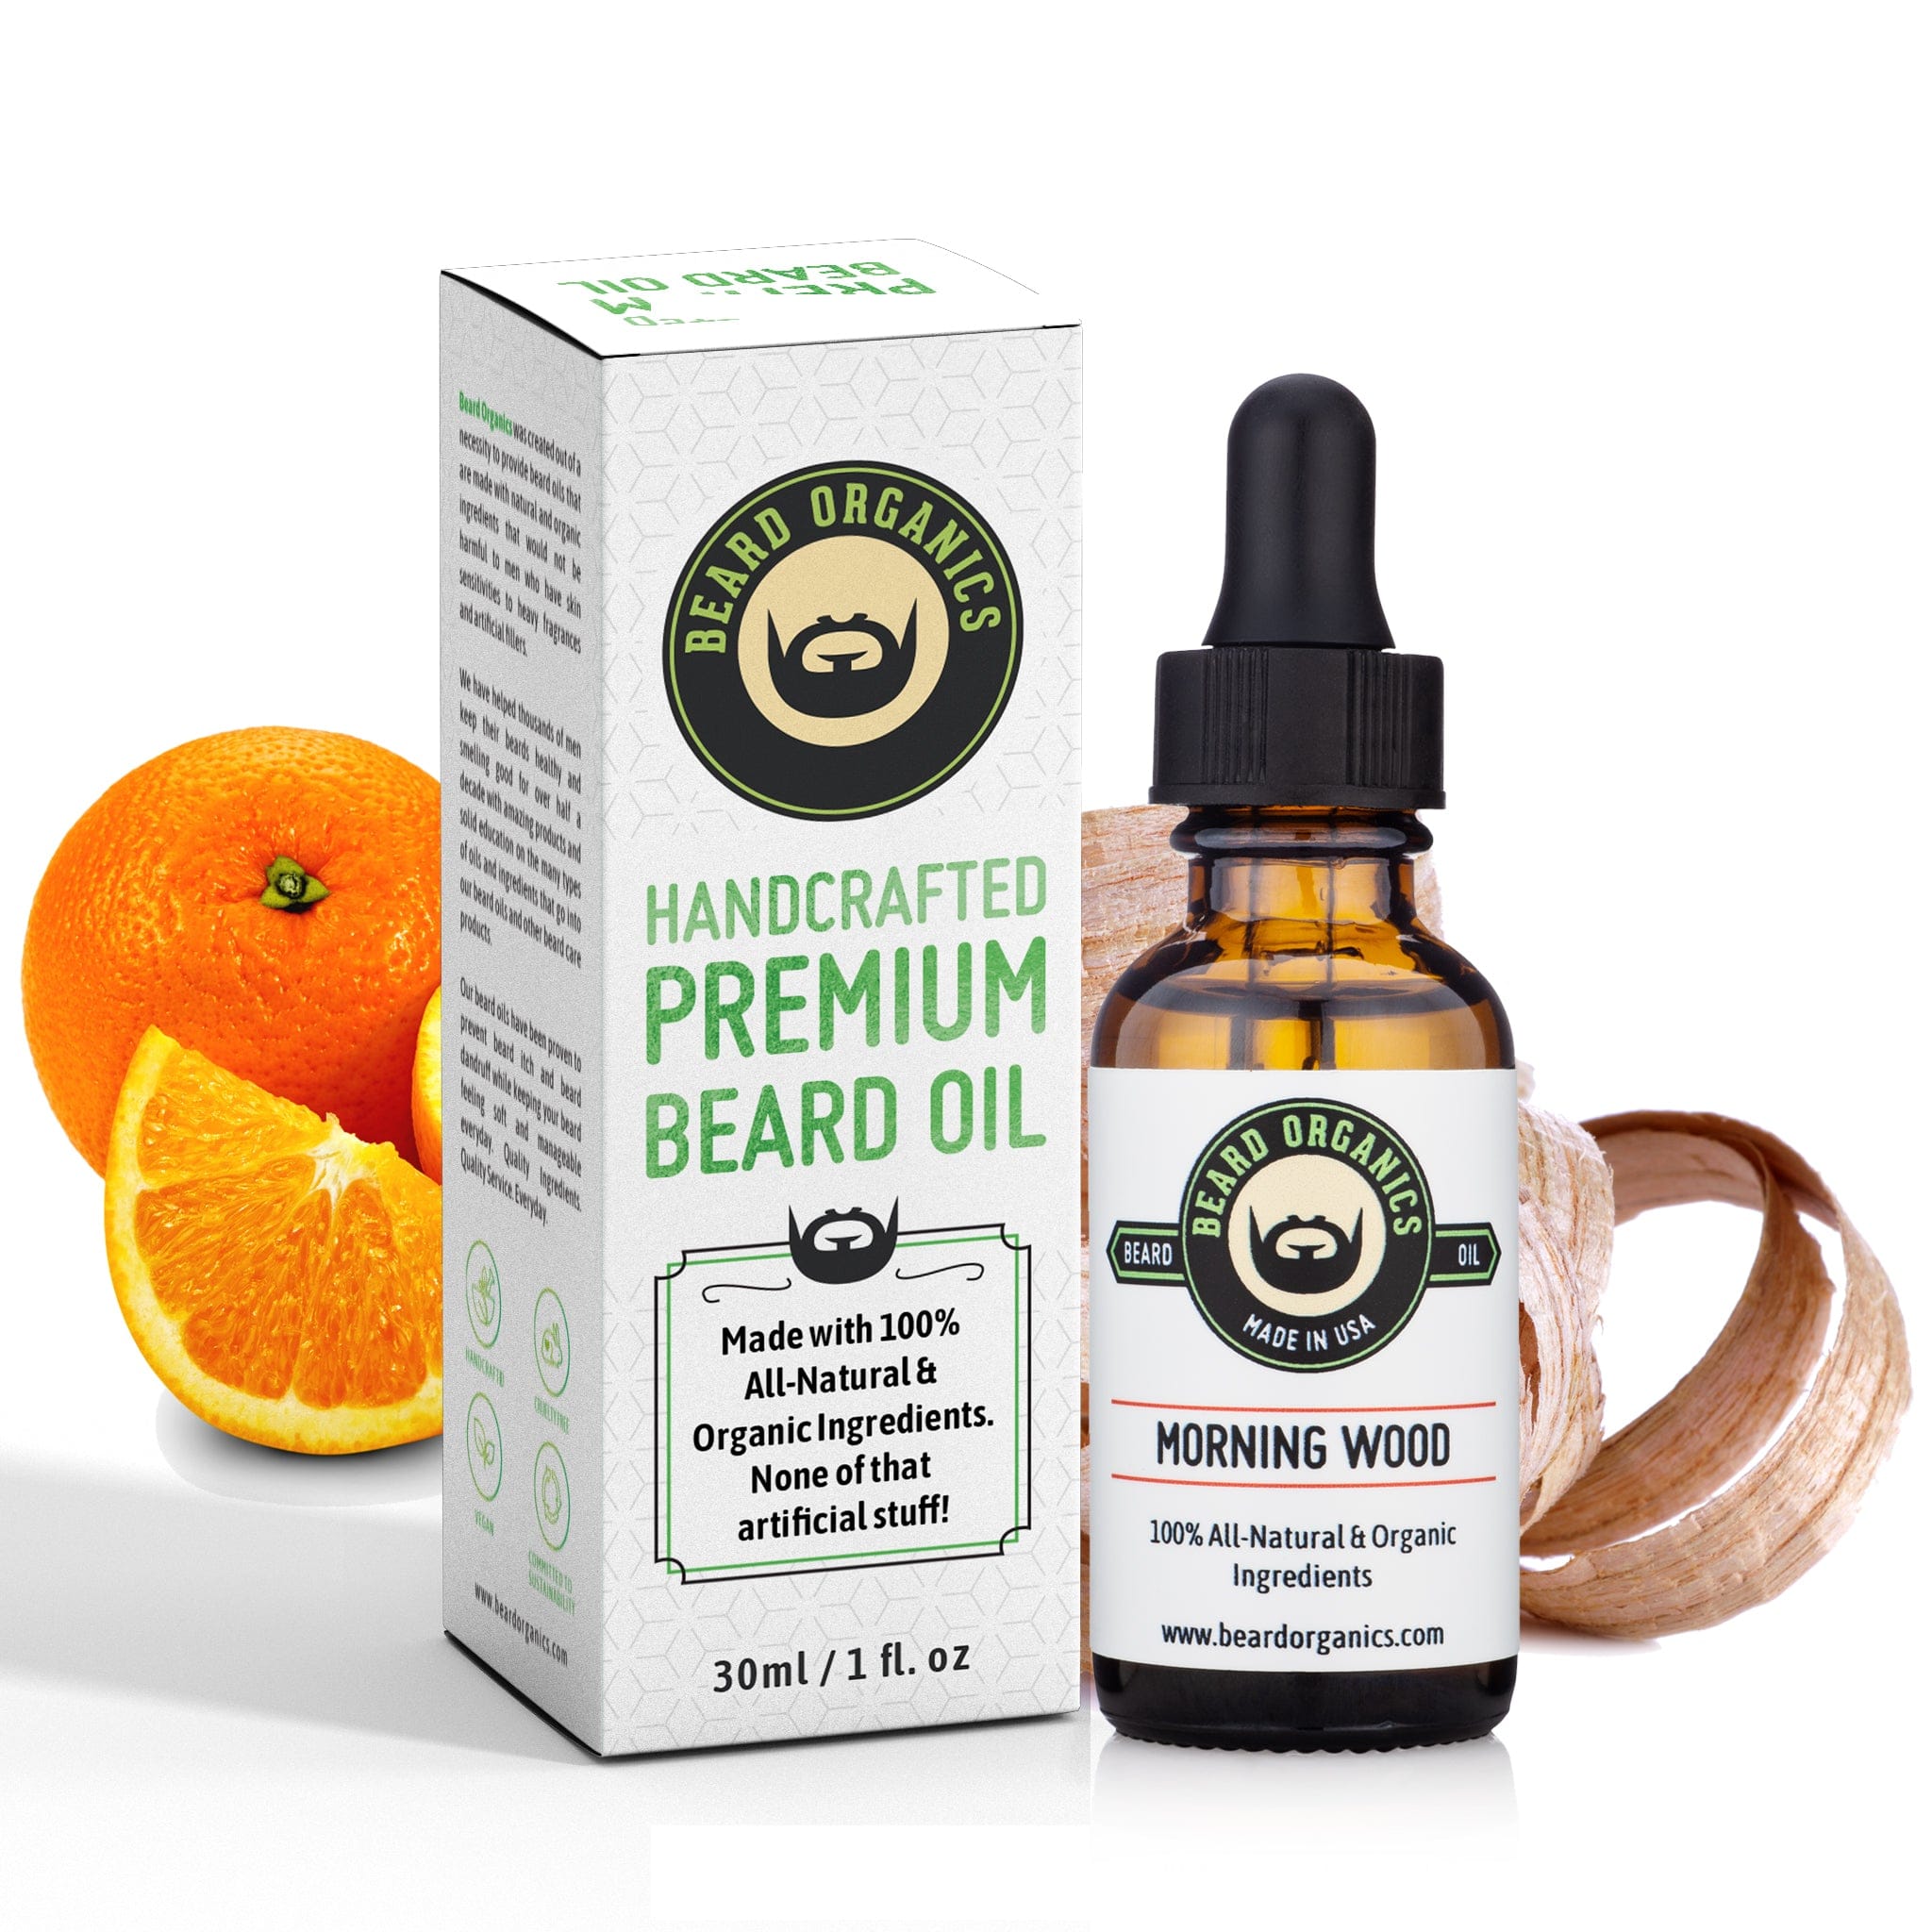 Morning Wood Beard Oil by Beard Organics